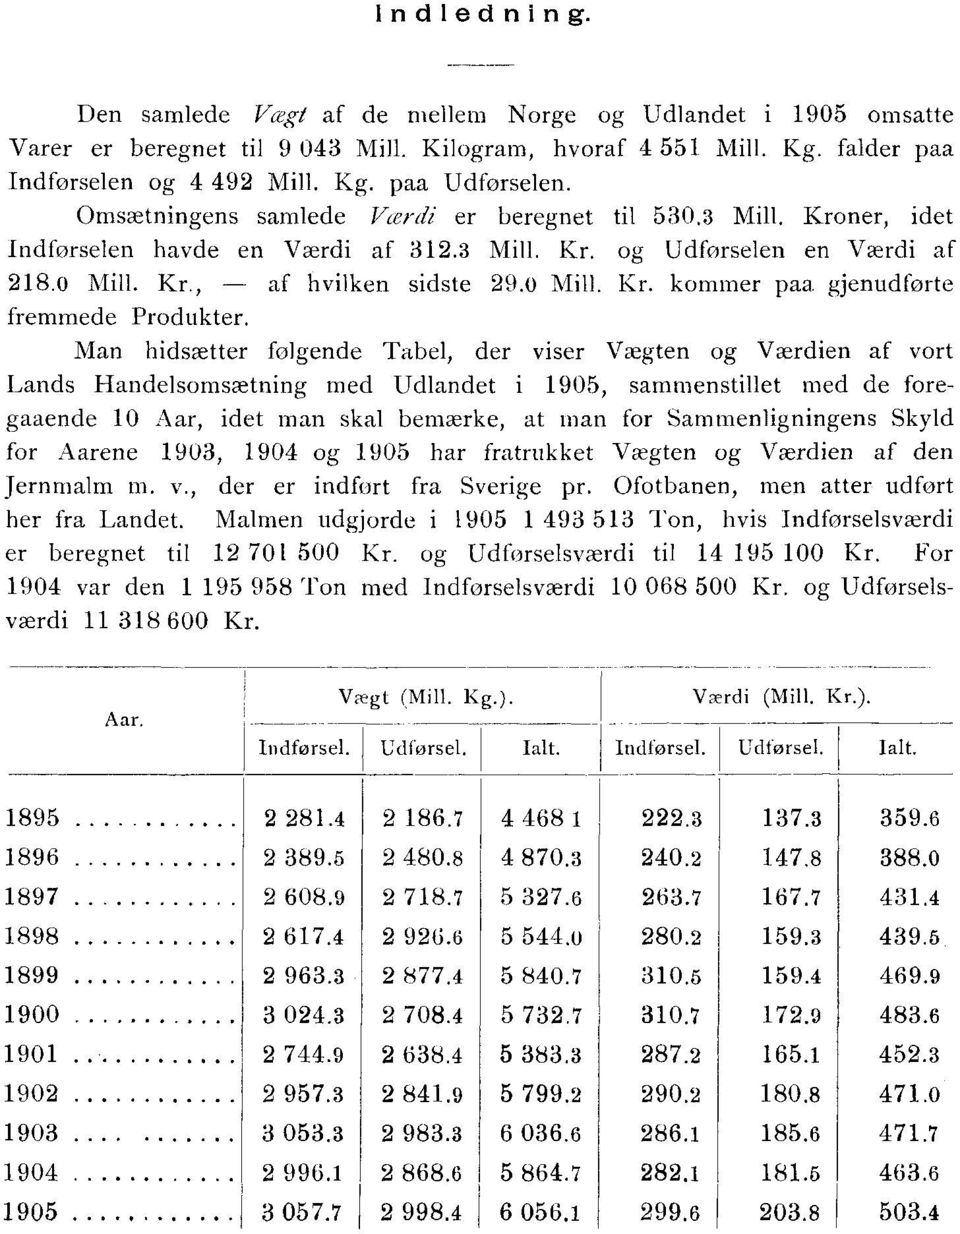 Man hidsætter følgende Tabel, der viser Vægten og Værdien af vort Lands somsætning med Udlandet i 1905, sammenstillet med de foregaaende 10 Aar, idet man skal bemærke, at man for Sammenligningens